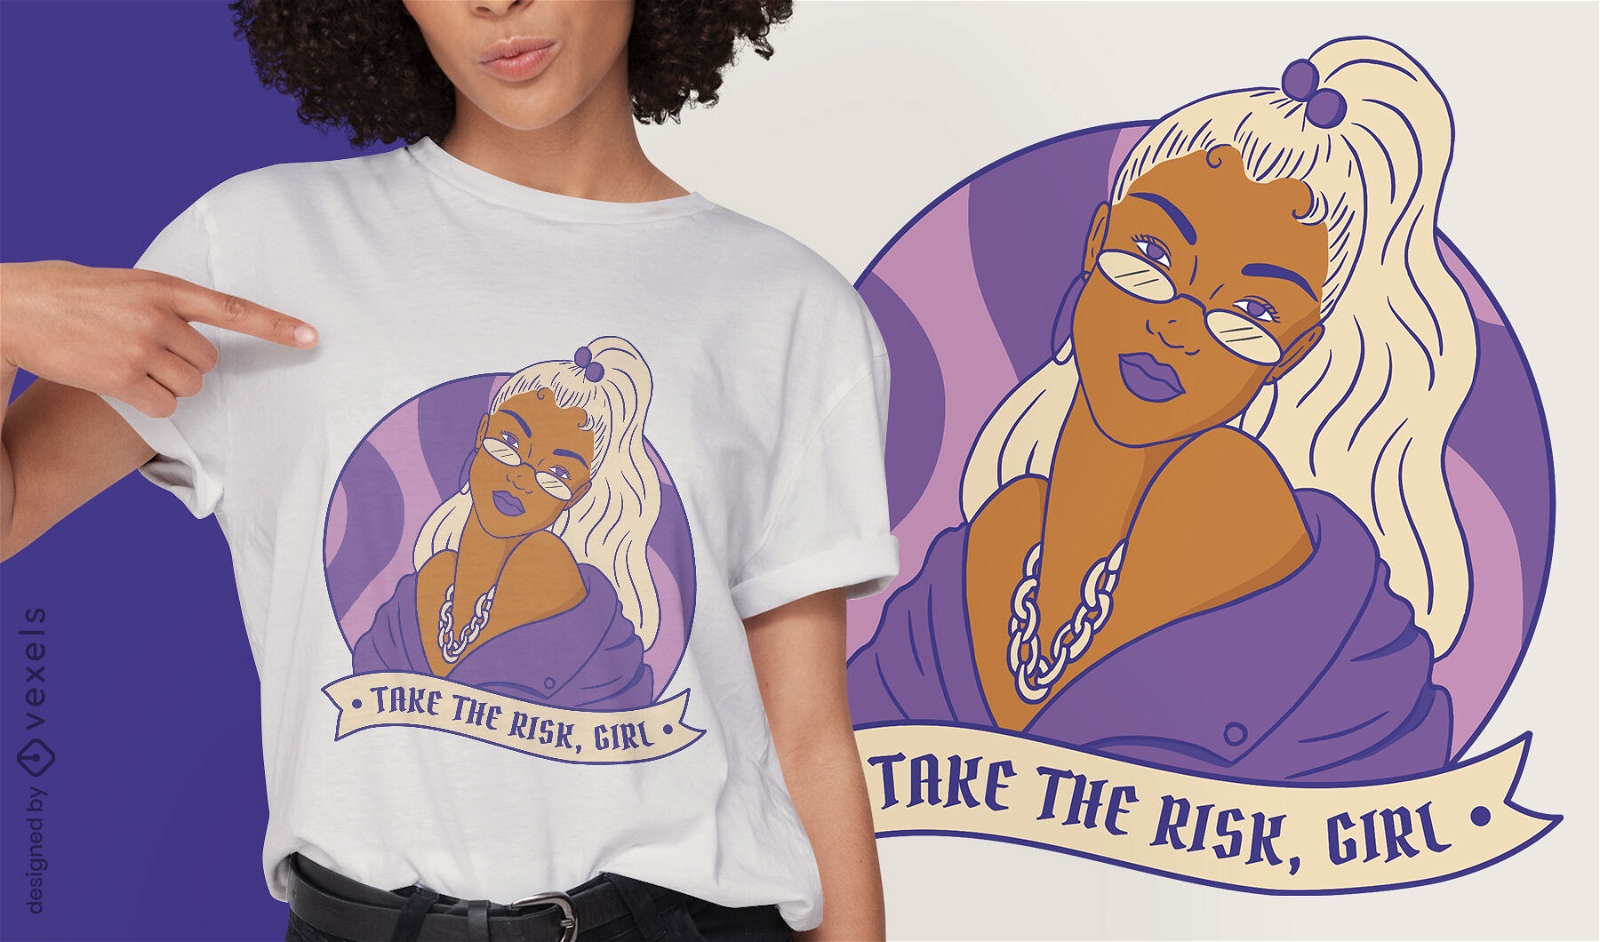 Strong woman feminist power t-shirt design